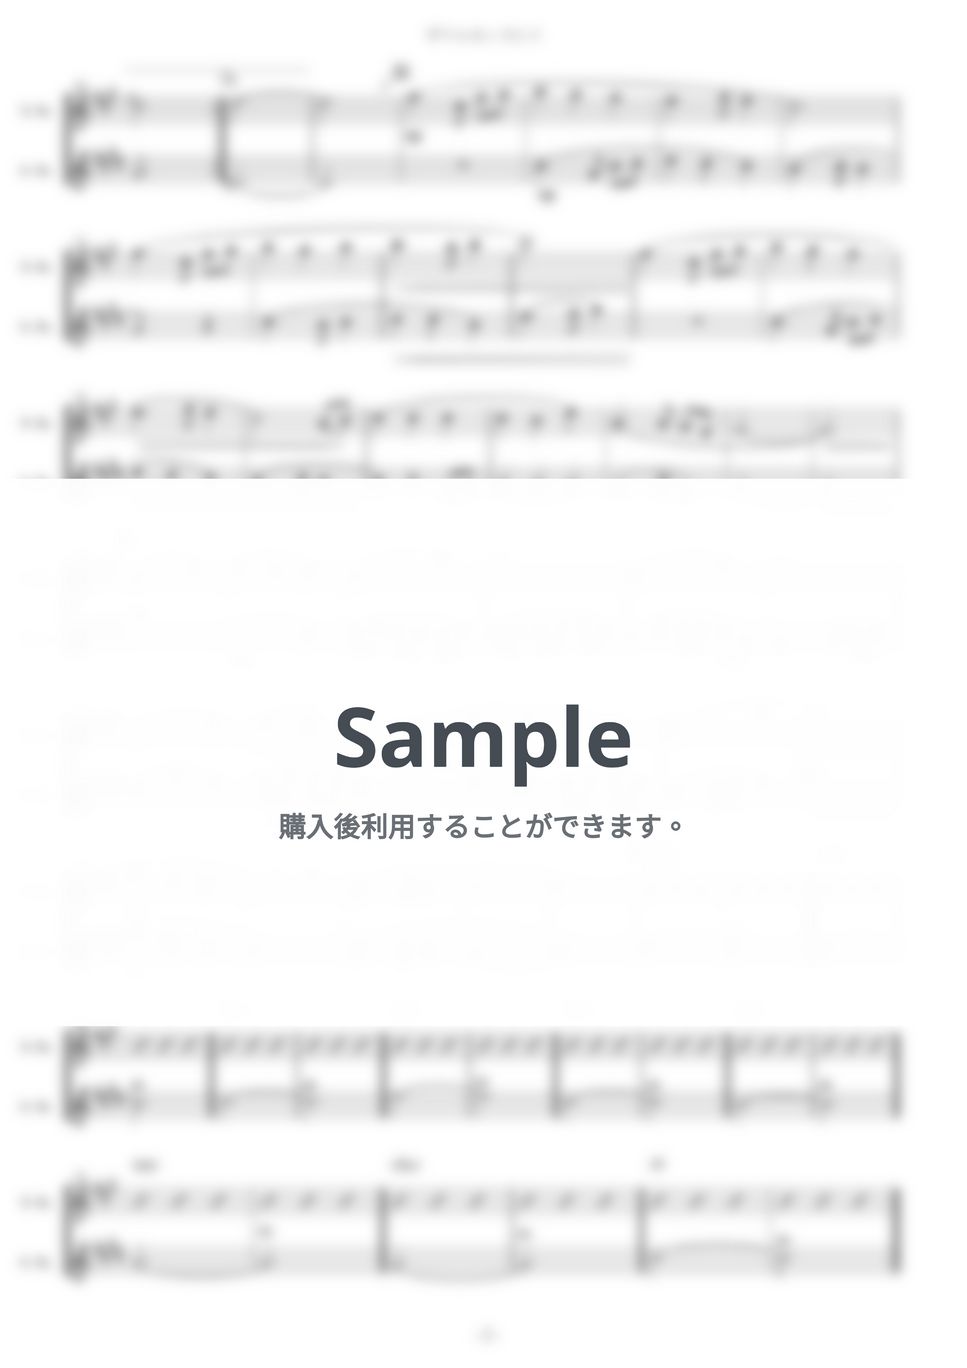 植松伸夫 - ザナルカンドにて (二重奏) by muta-sax